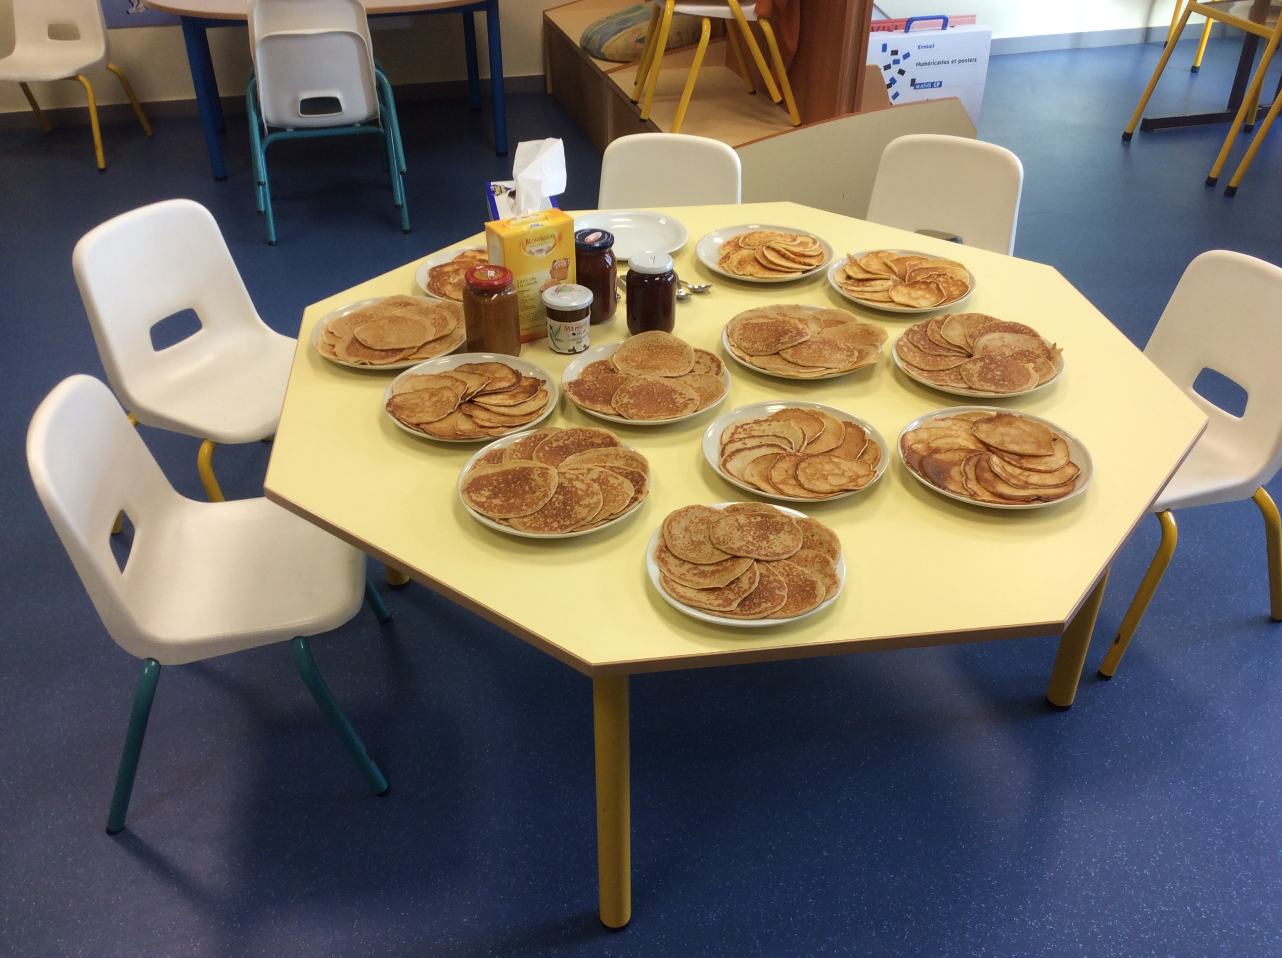  Pancake day : la table est prête !